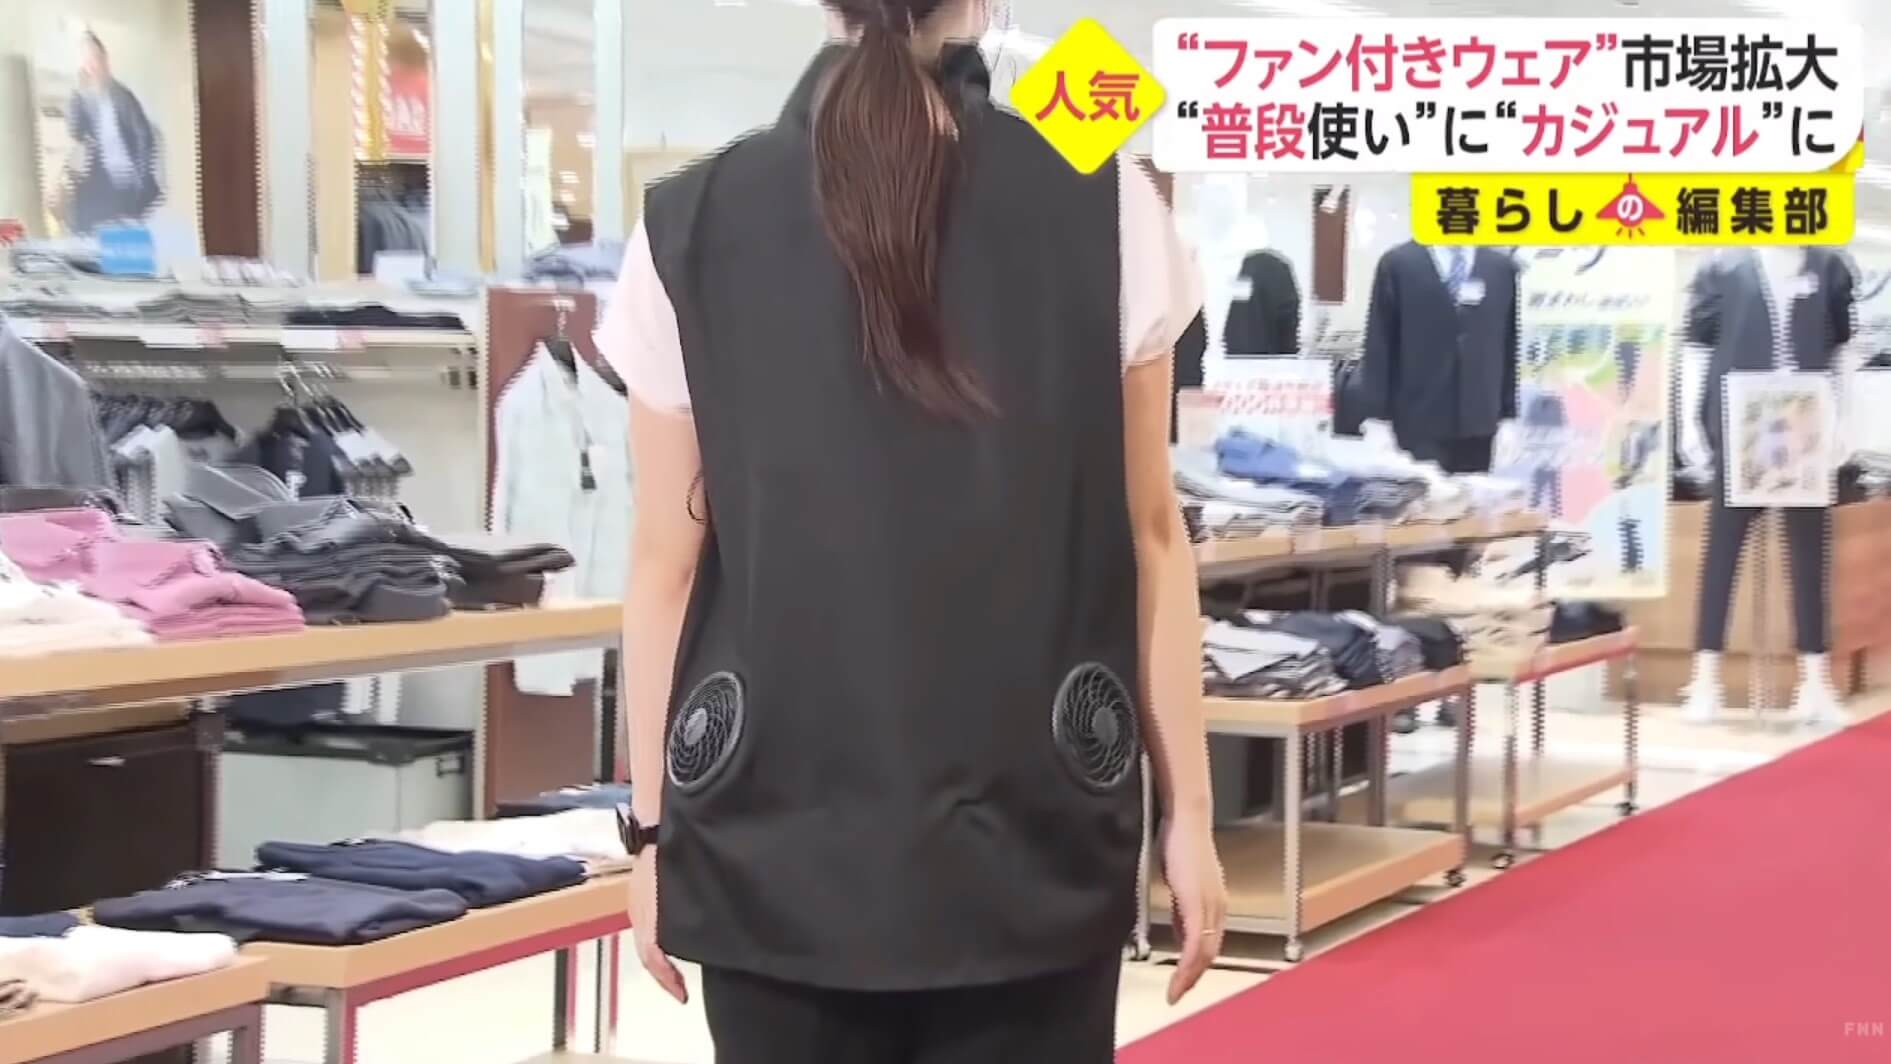 Roupas com refrigeração entram na moda no Japão